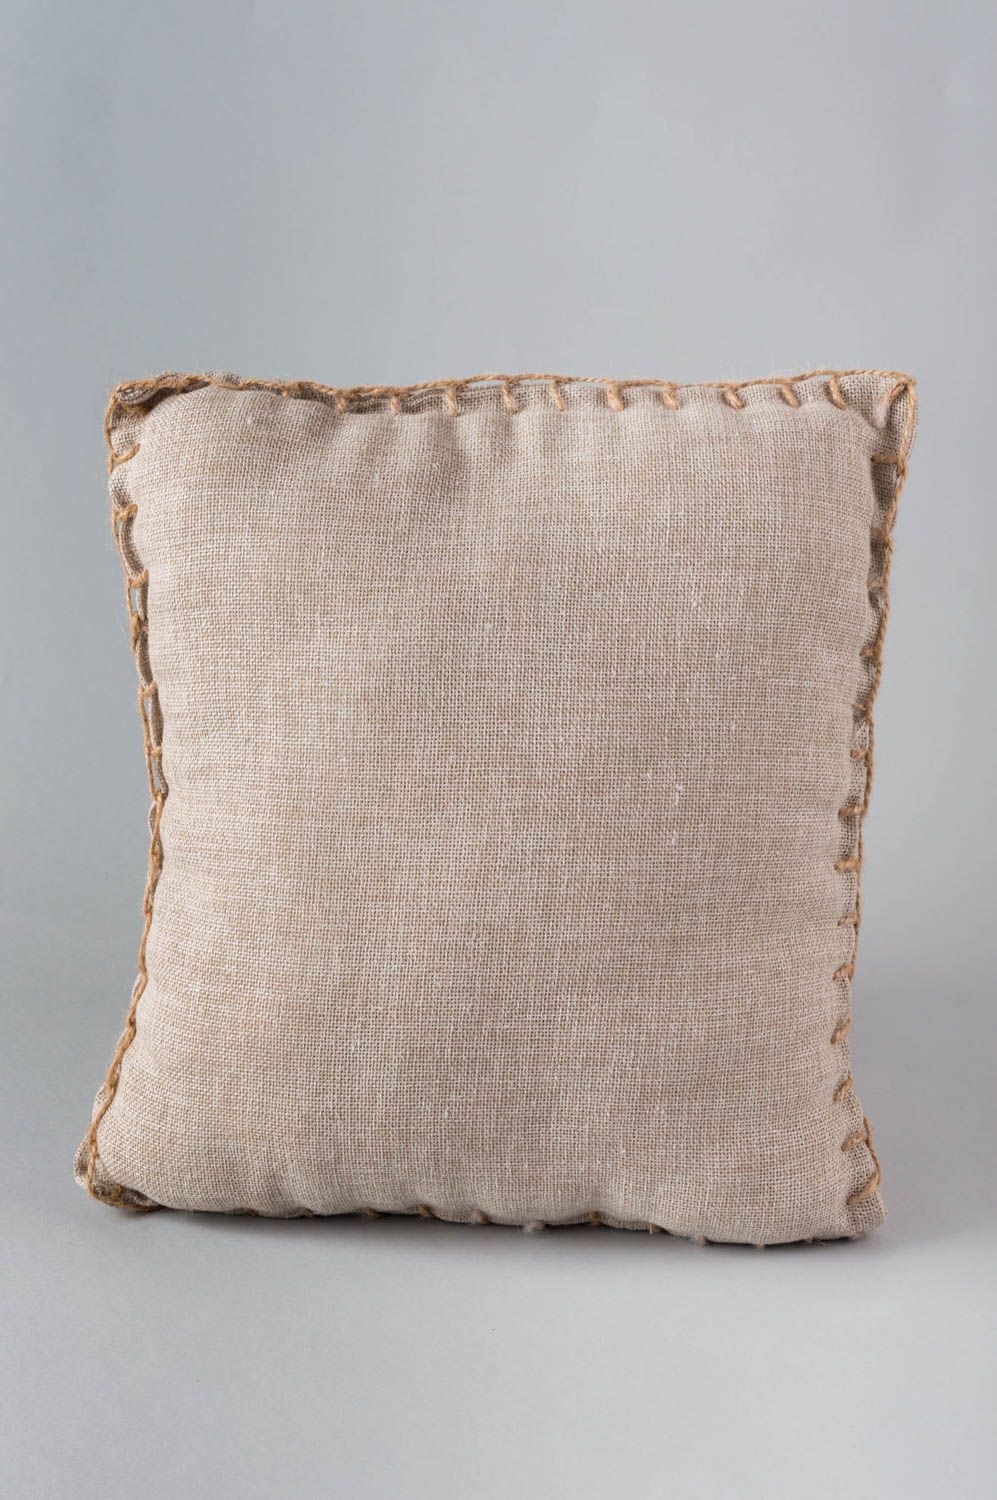 Мягкая диванная подушка из ткани с принтом ручной работы авторская красивая фото 3